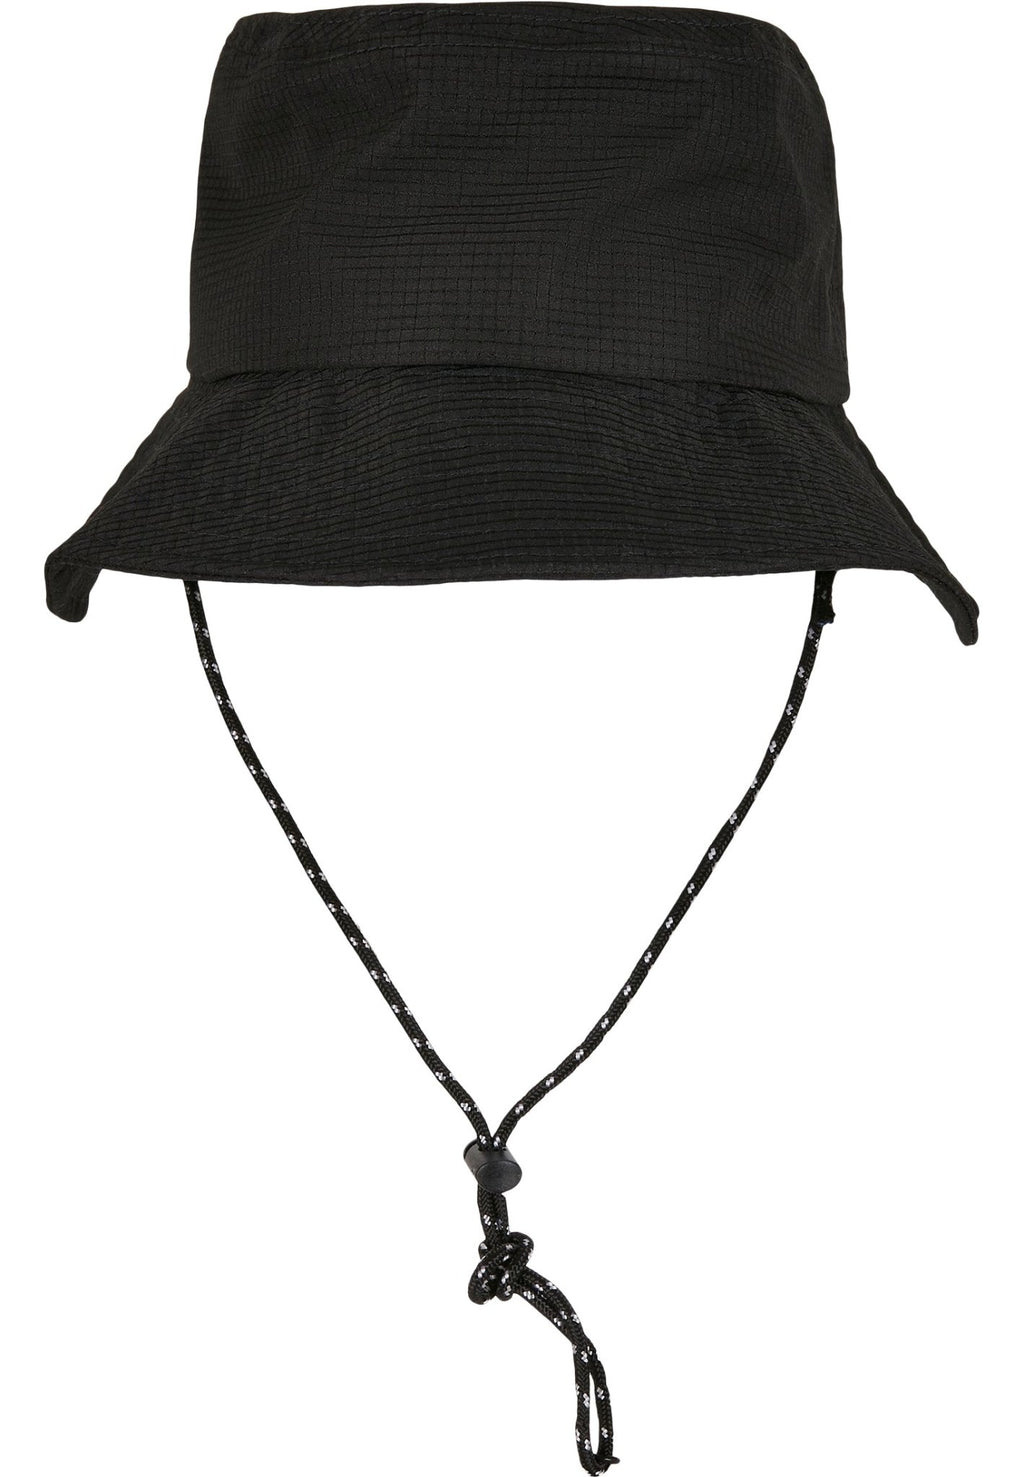 Nastaviteľný klobúk Flexfit Bucket Hat - čierny